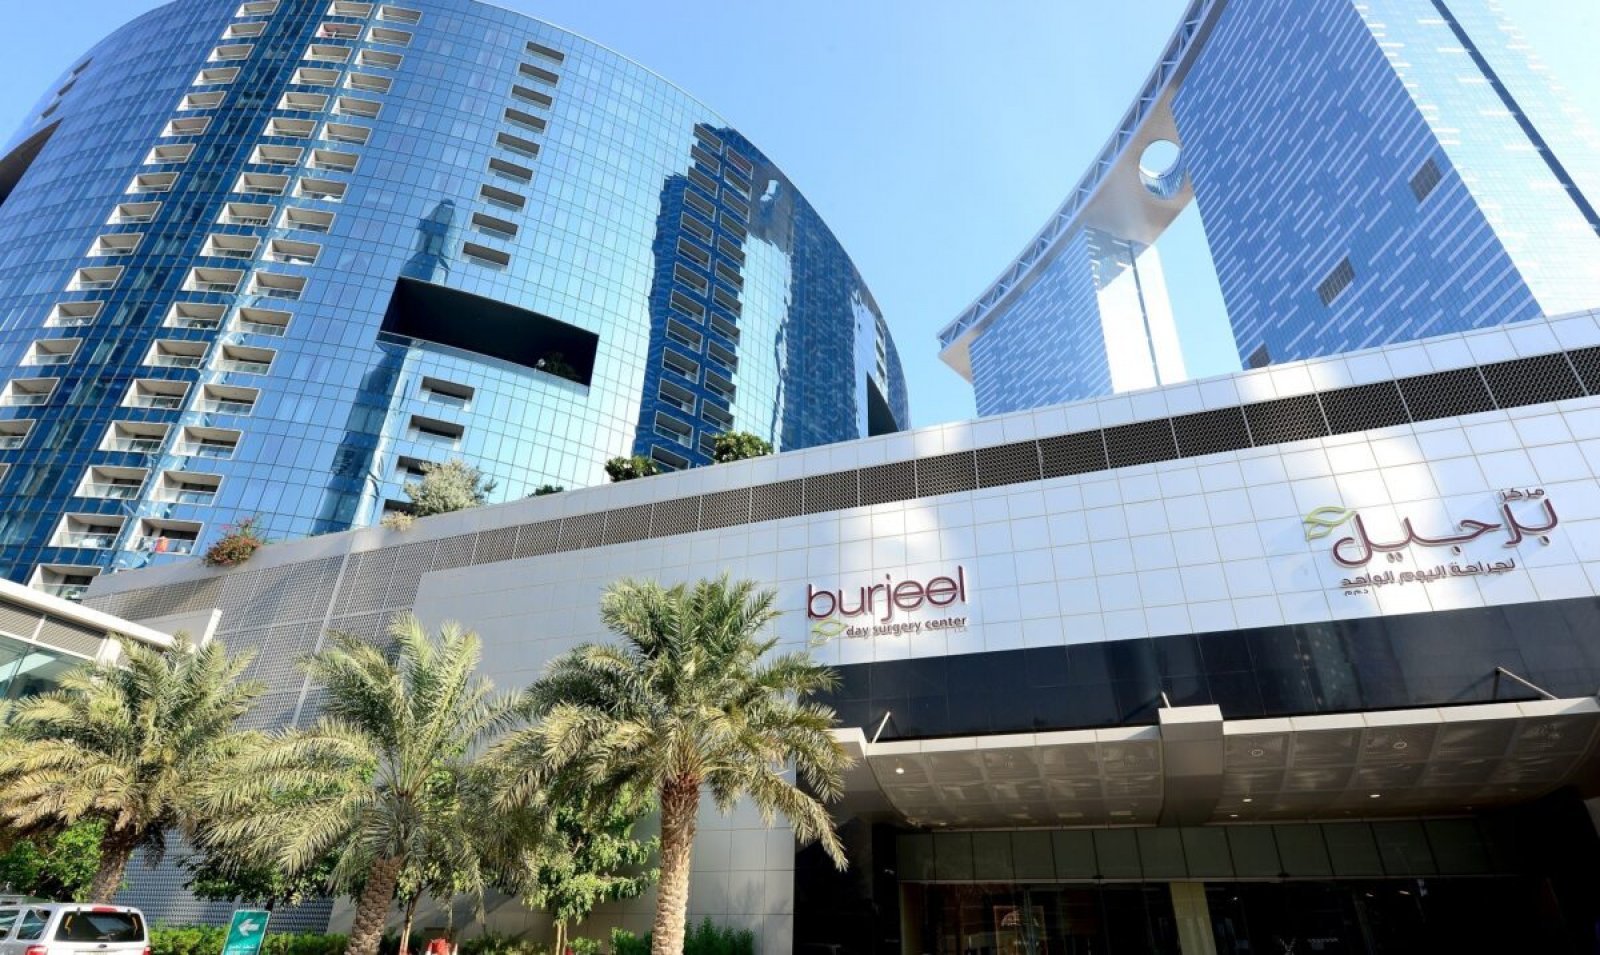 Burjeel Day Surgery Center, Abu Dhabi, U.A.E.